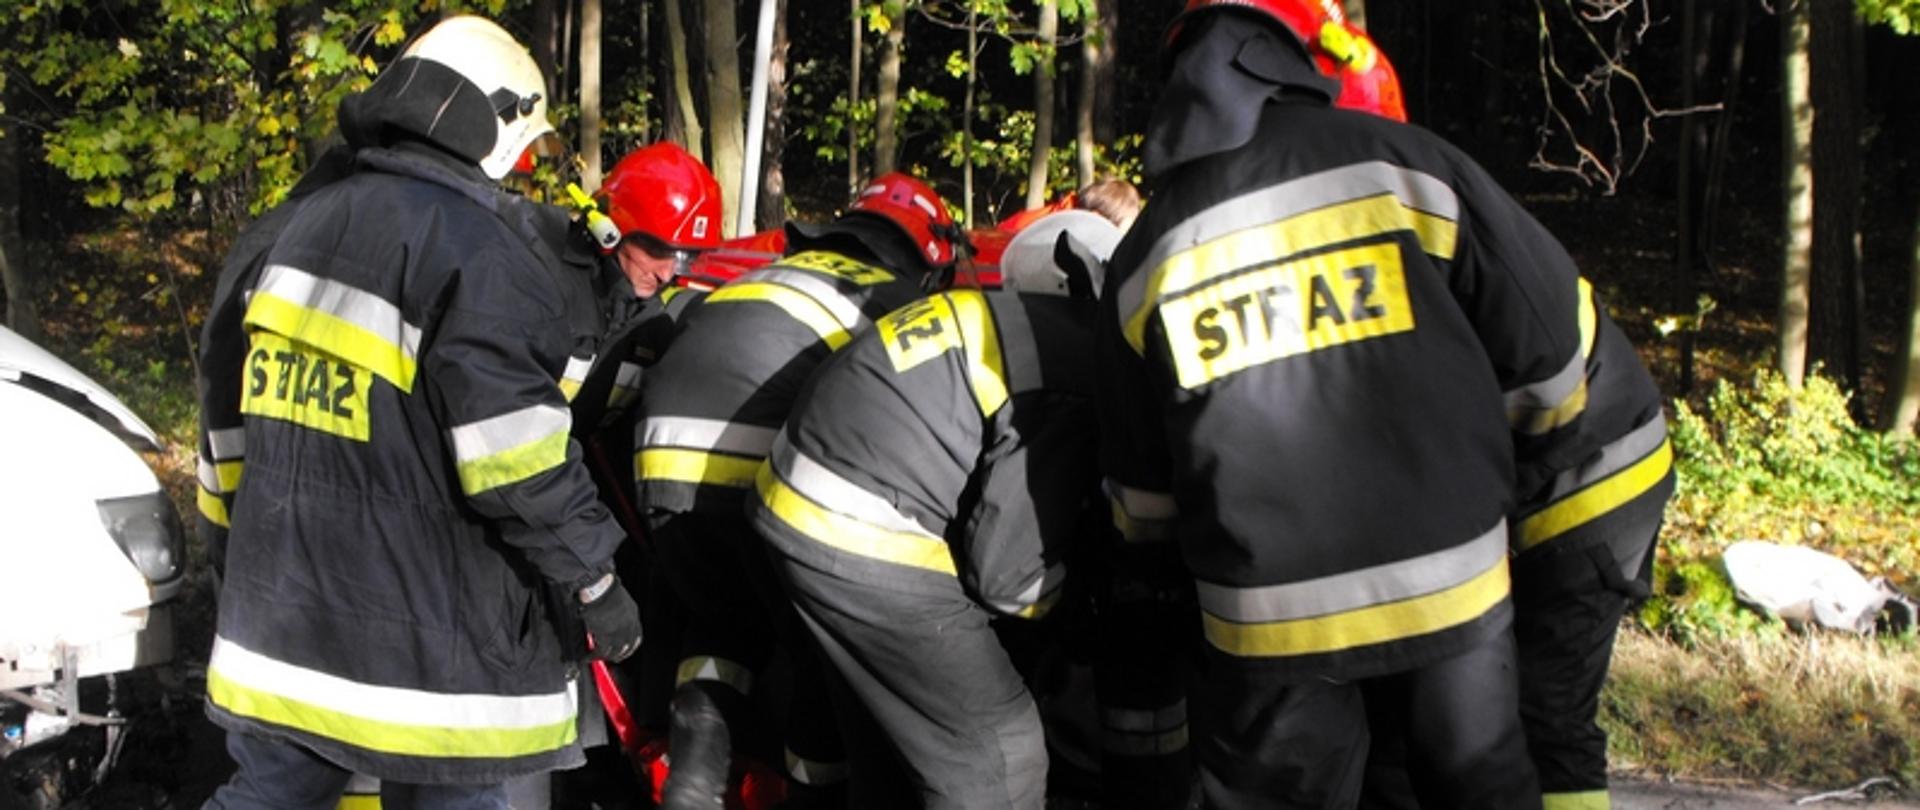 Zdjęcie przedstawia strażaków podczas działań ratowniczych